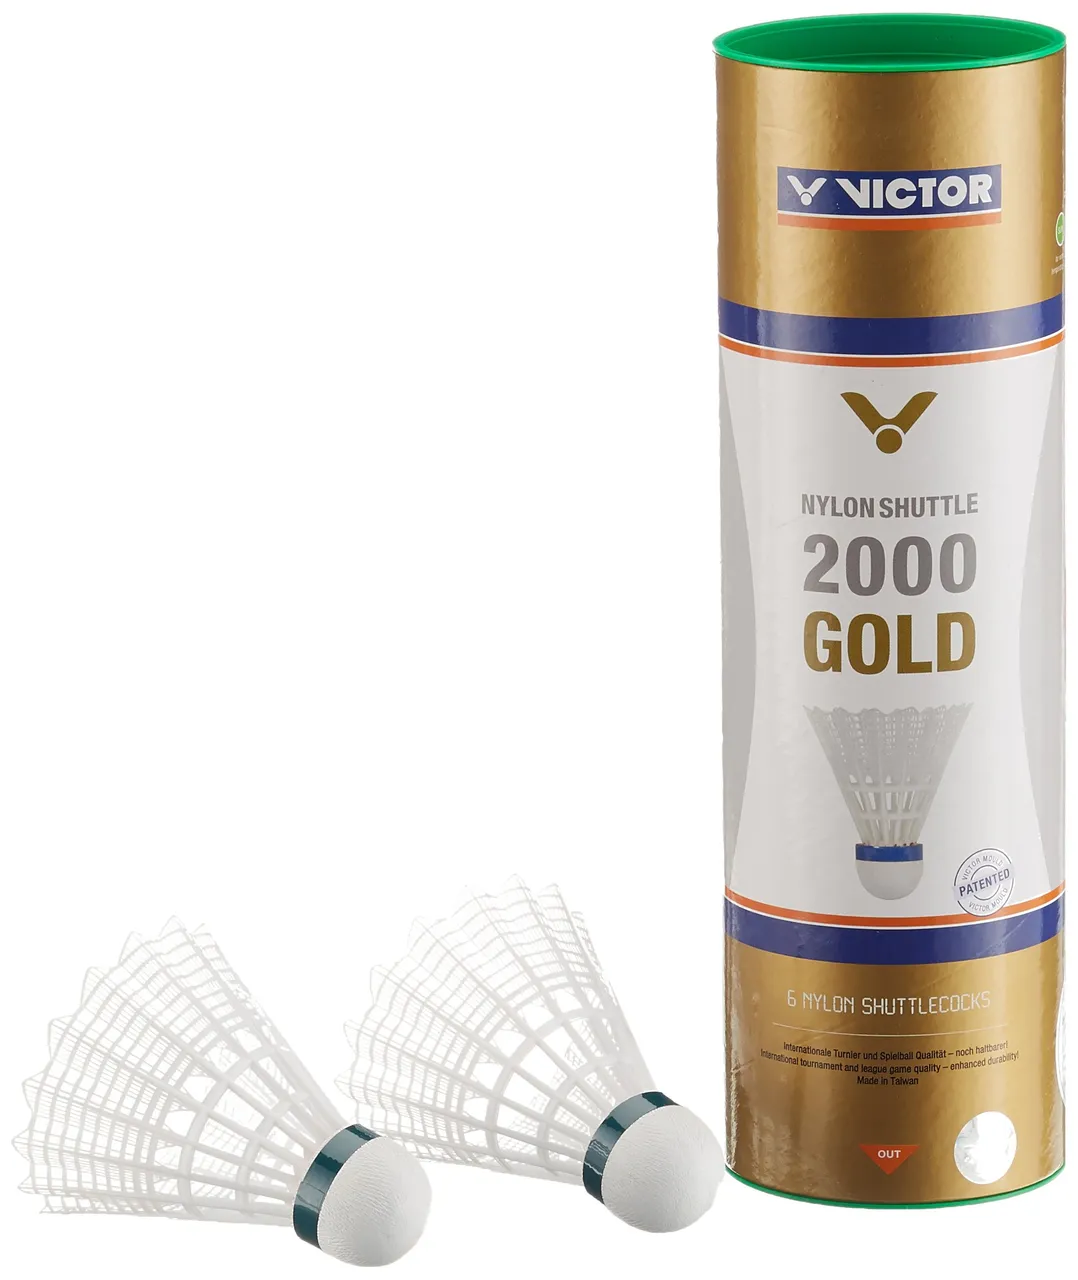 VICTOR Nylon Shuttle 2000 gold-Weiß-Grün